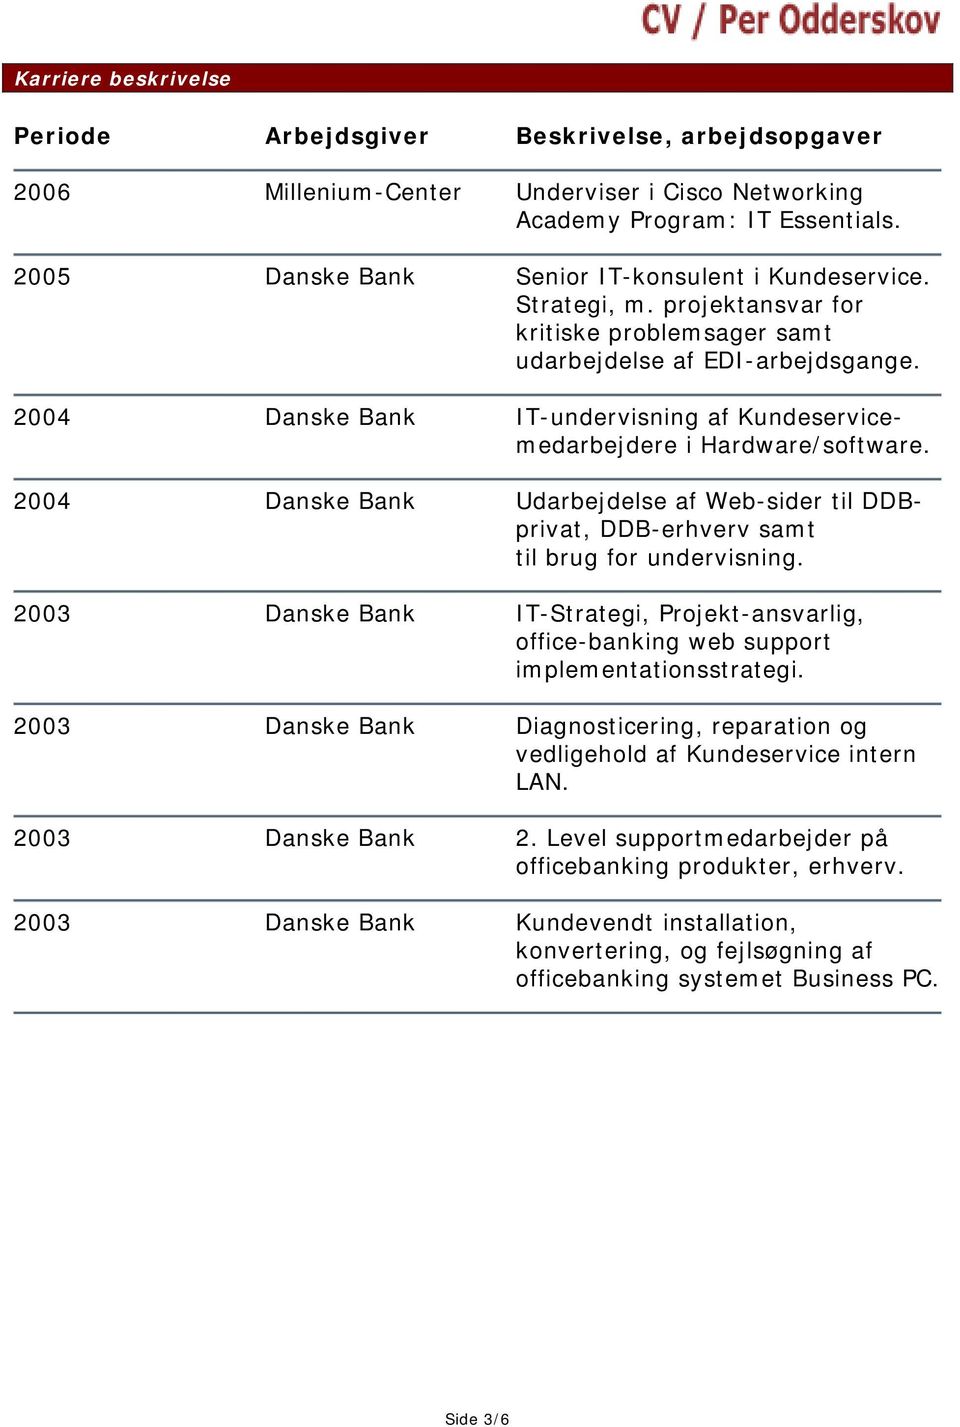 2004 Danske Bank IT-undervisning af Kundeservicemedarbejdere i Hardware/software. 2004 Danske Bank Udarbejdelse af Web-sider til DDBprivat, DDB-erhverv samt til brug for undervisning.